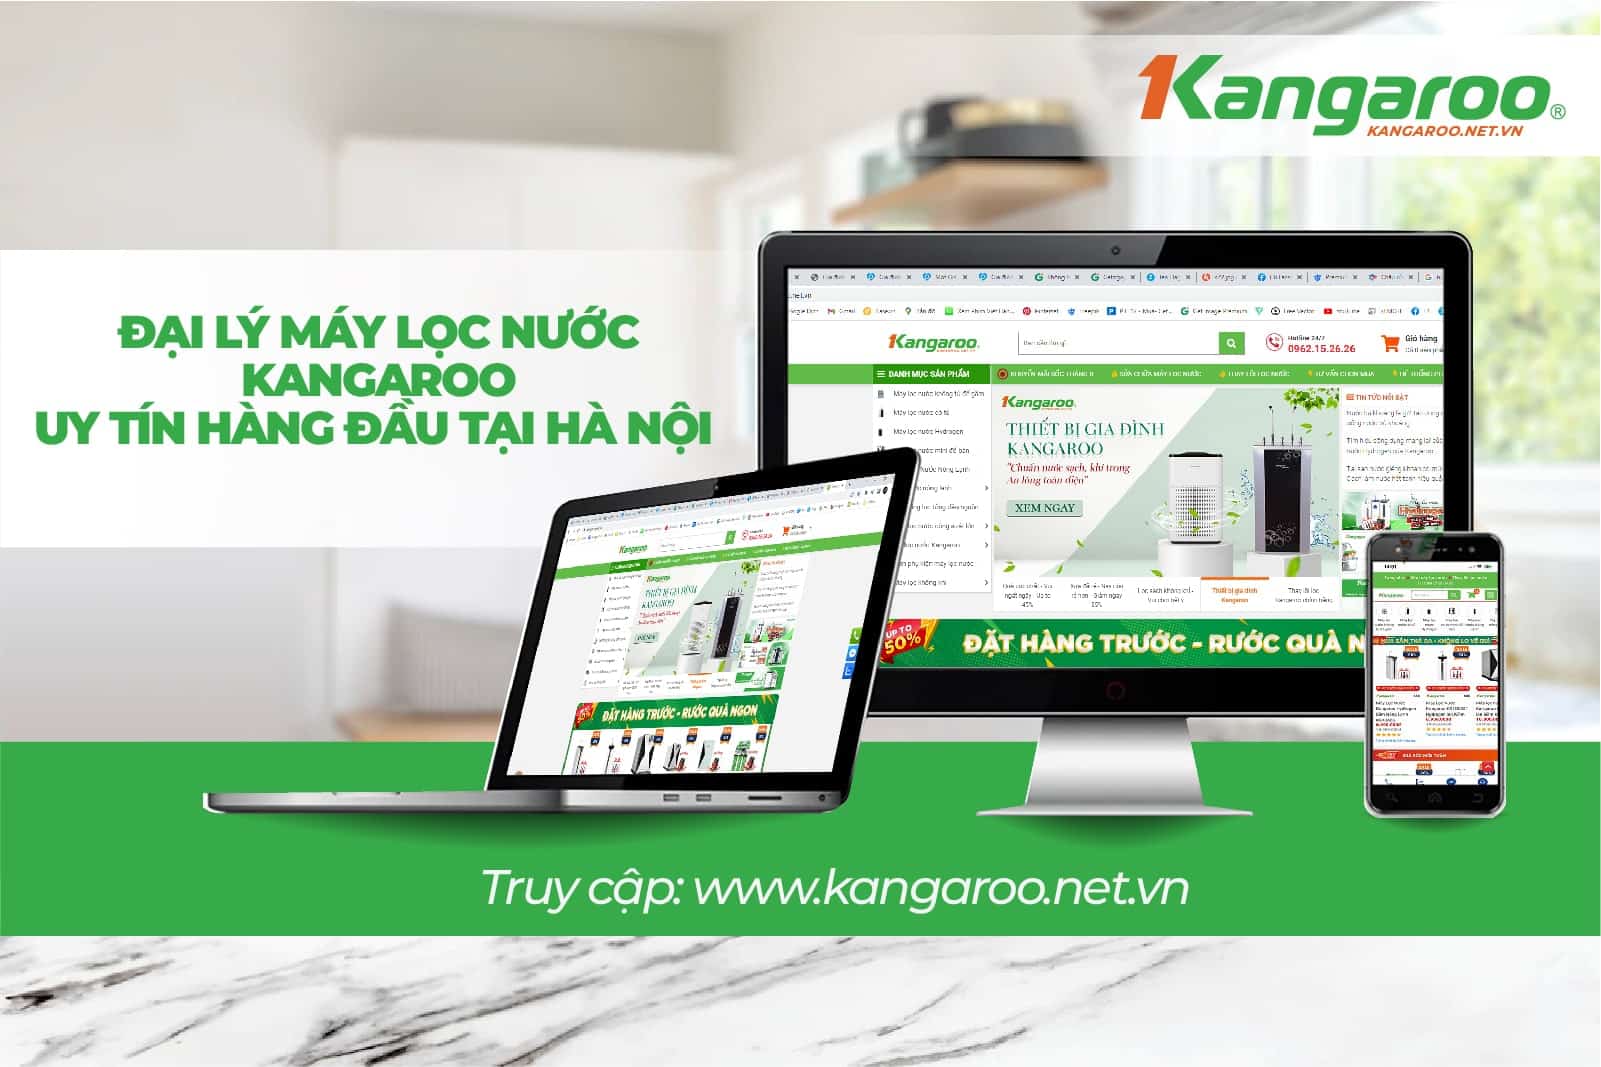 Kangaroo.net.vn địa chỉ uy tín cung cấp máy lọc nước Kangaroo KG100MED